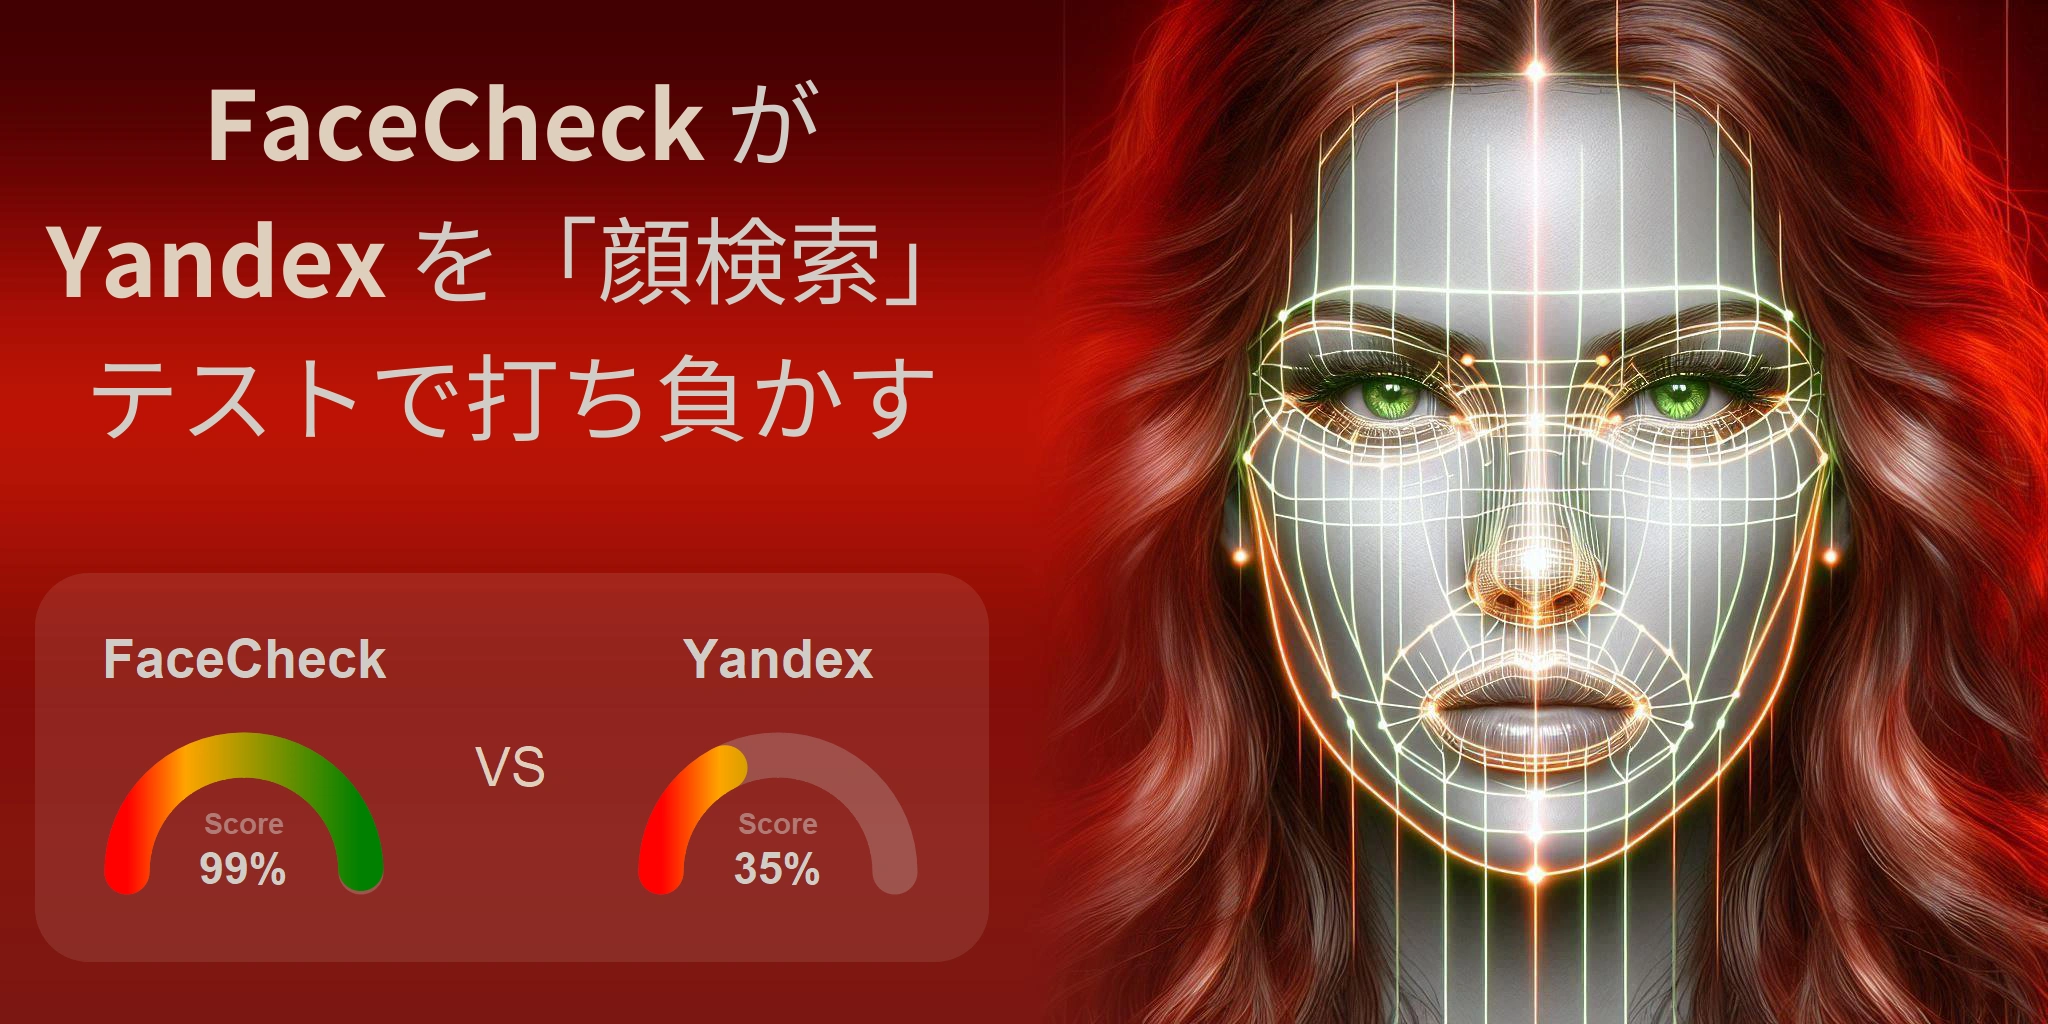 顔検索に最適なのはどちら？：FaceCheck か Yandex?